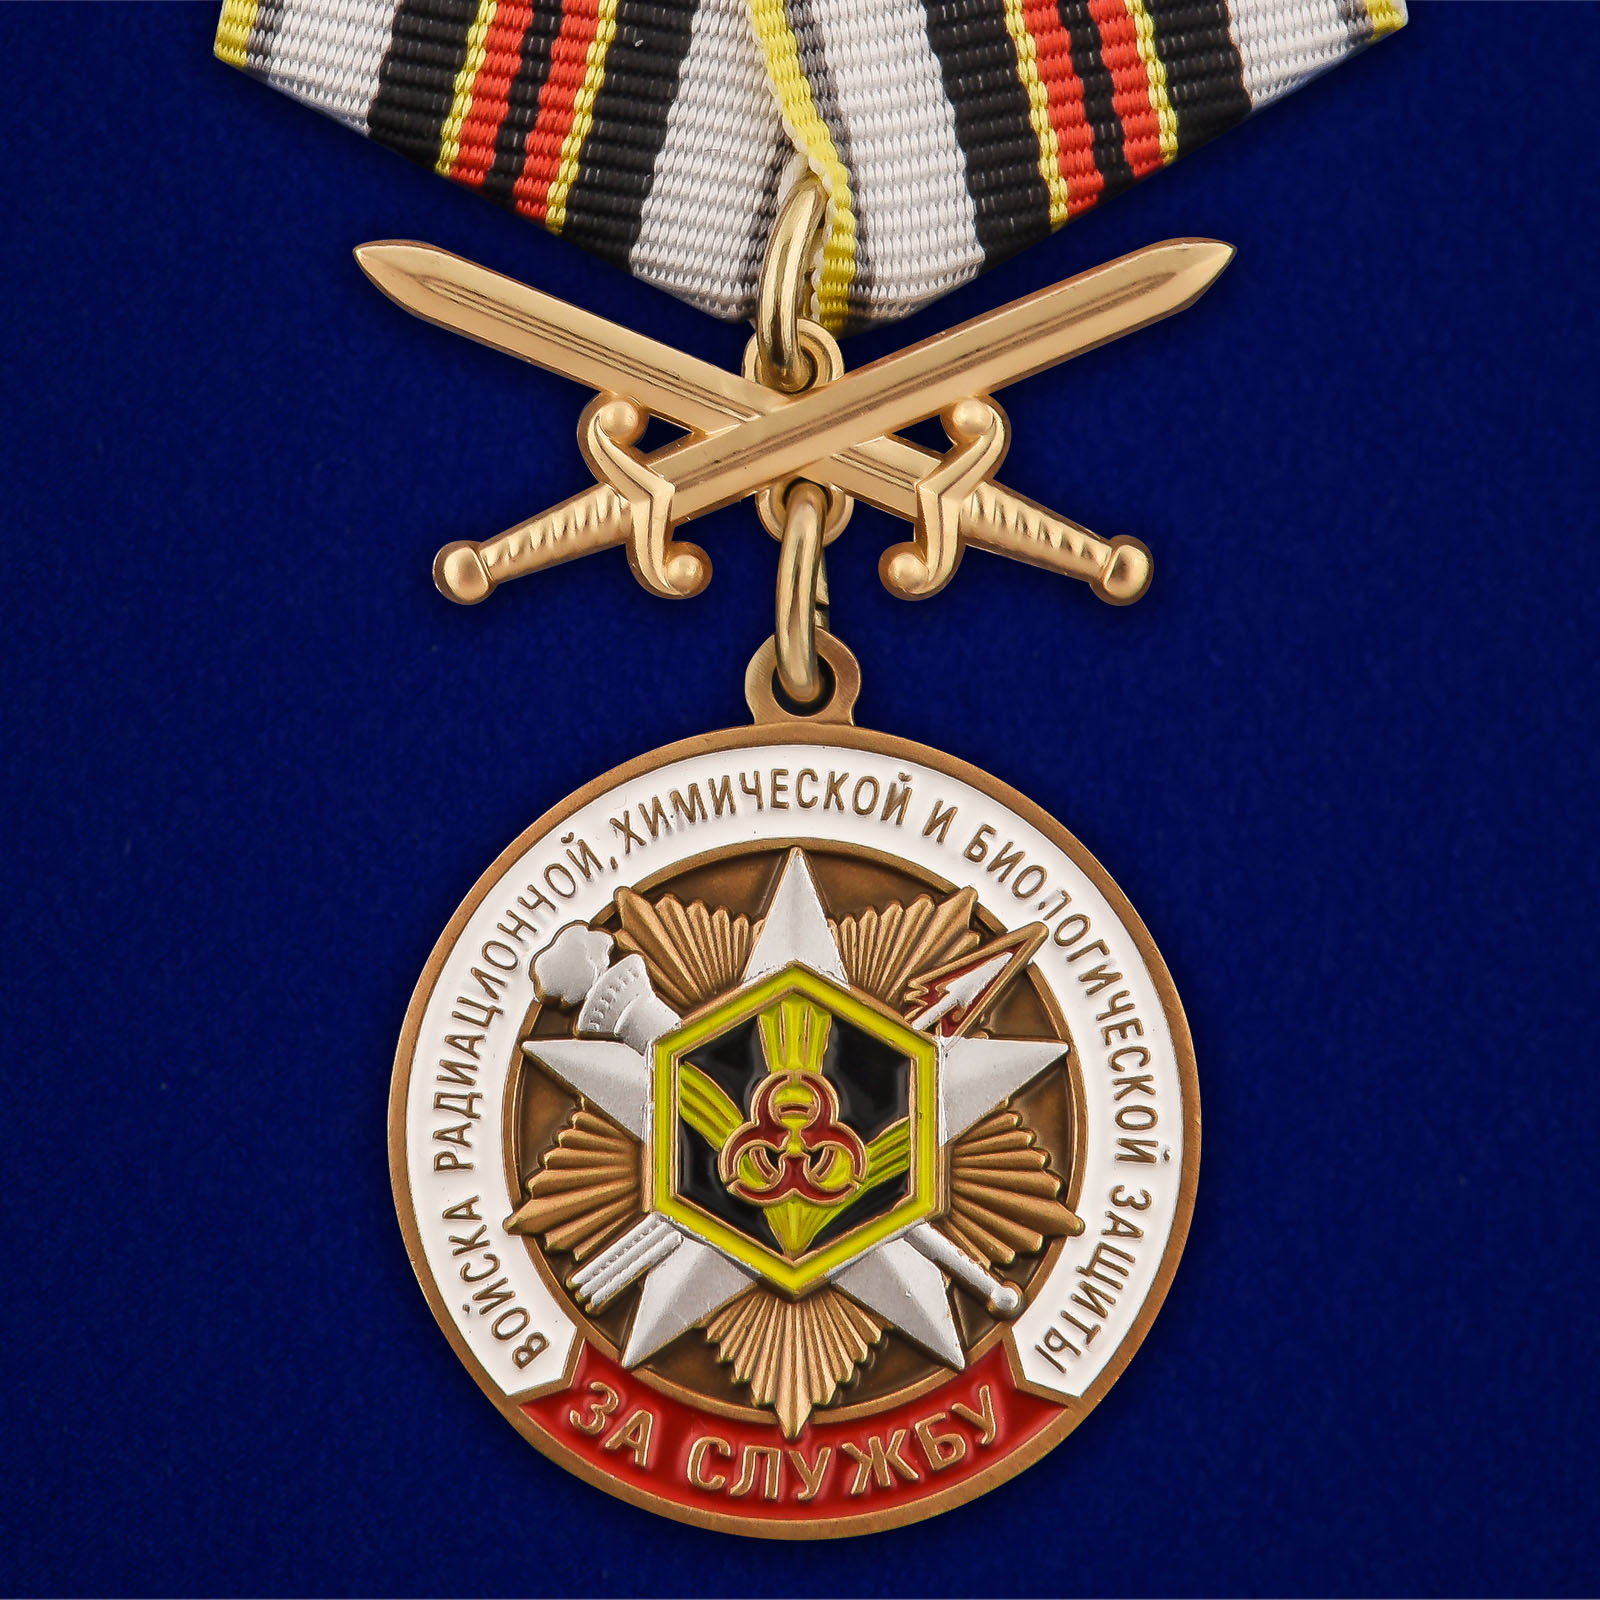 Купить медаль За службу в войсках РХБЗ онлайн